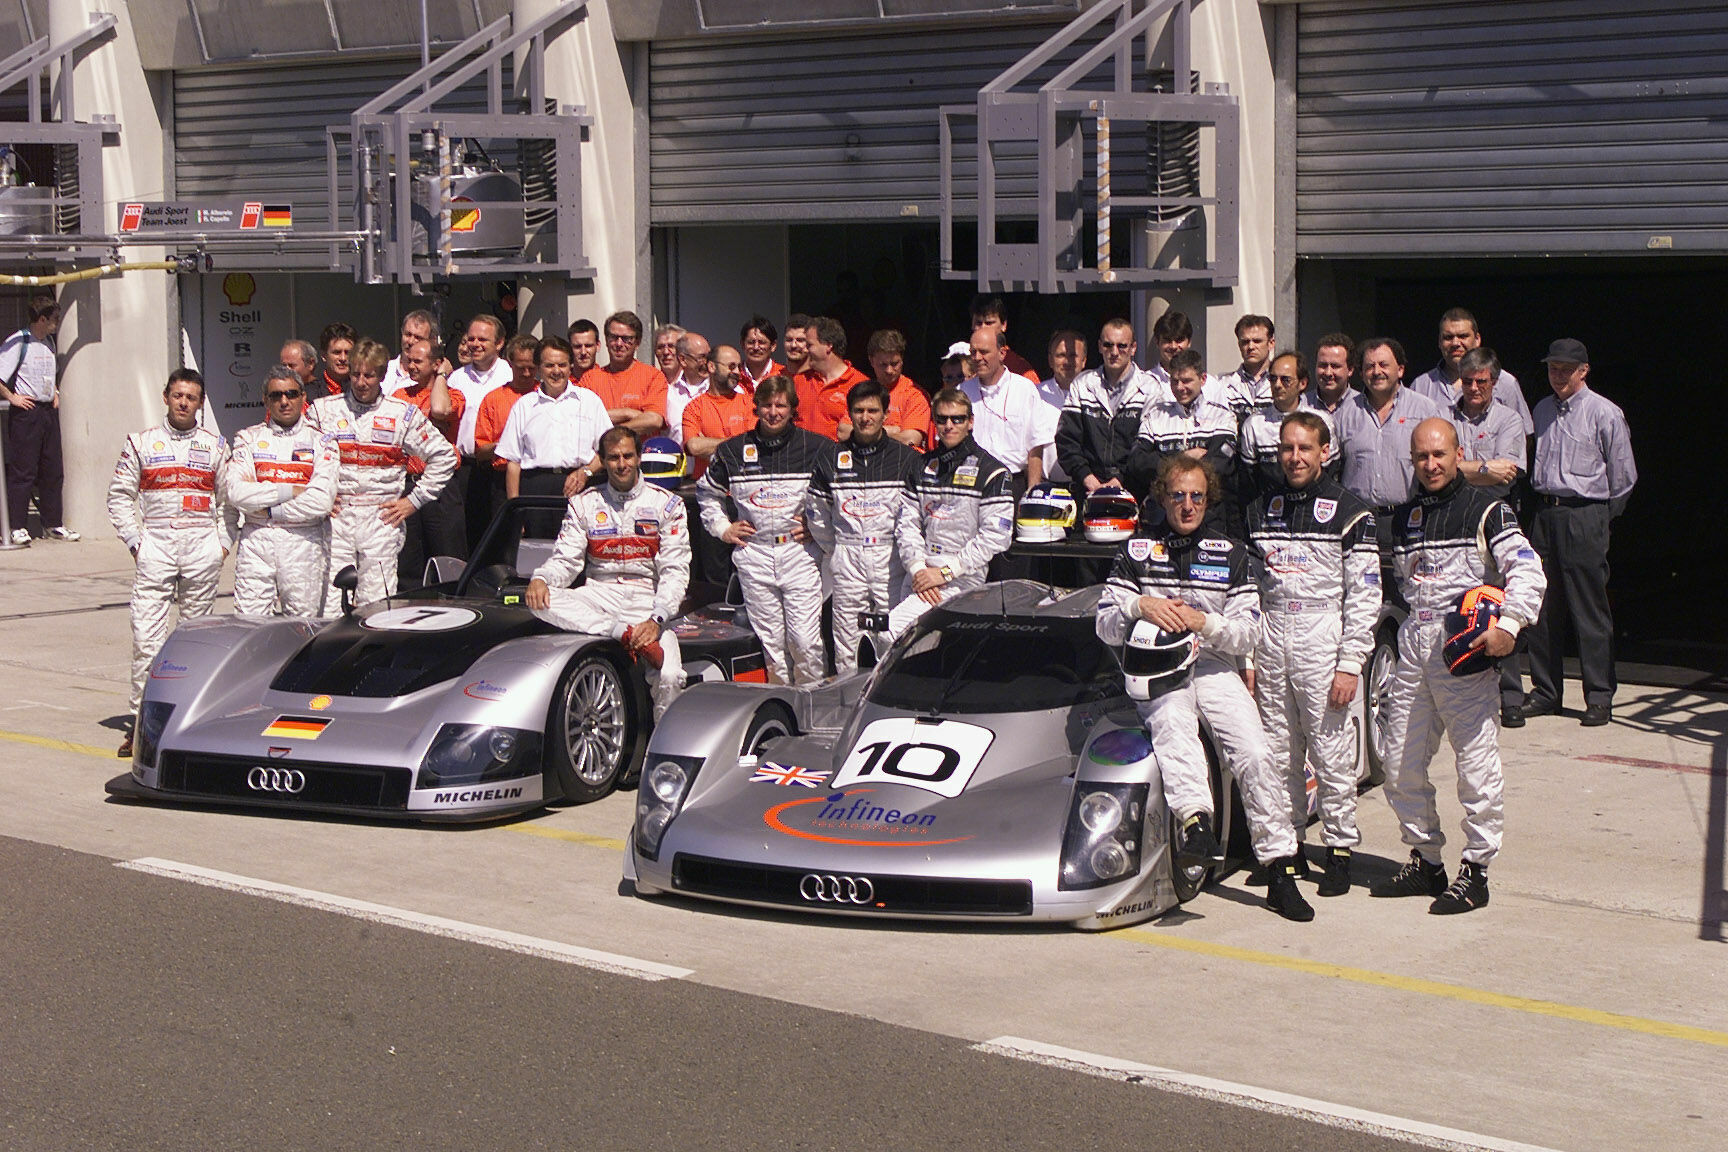 Le Mans 1999